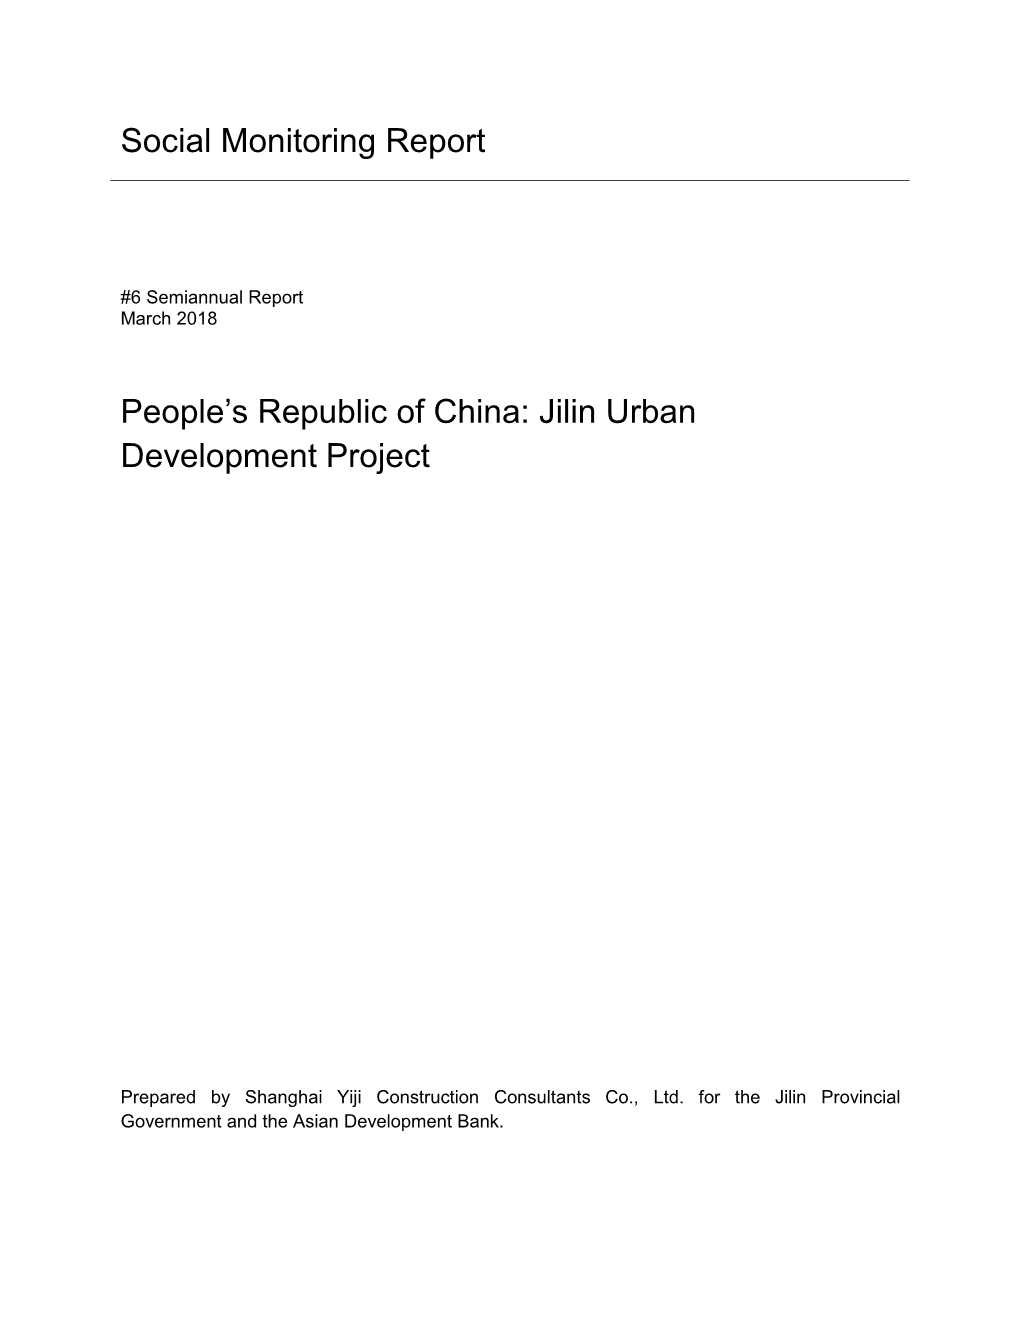 46048-002: Jilin Urban Development Project